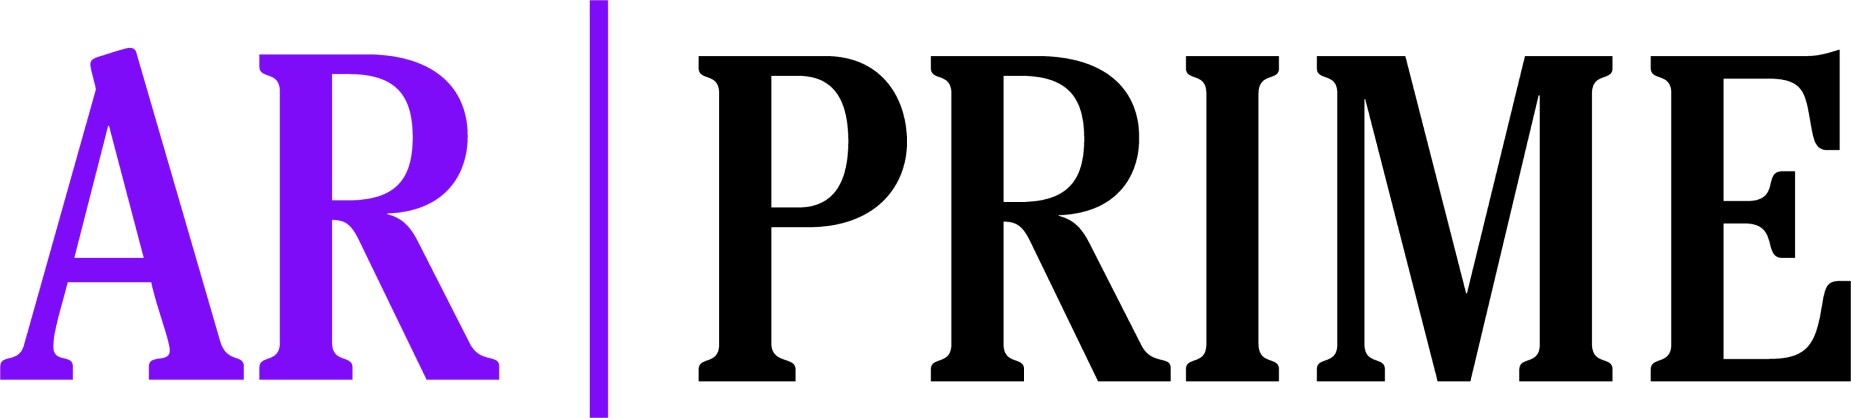 Logo prime